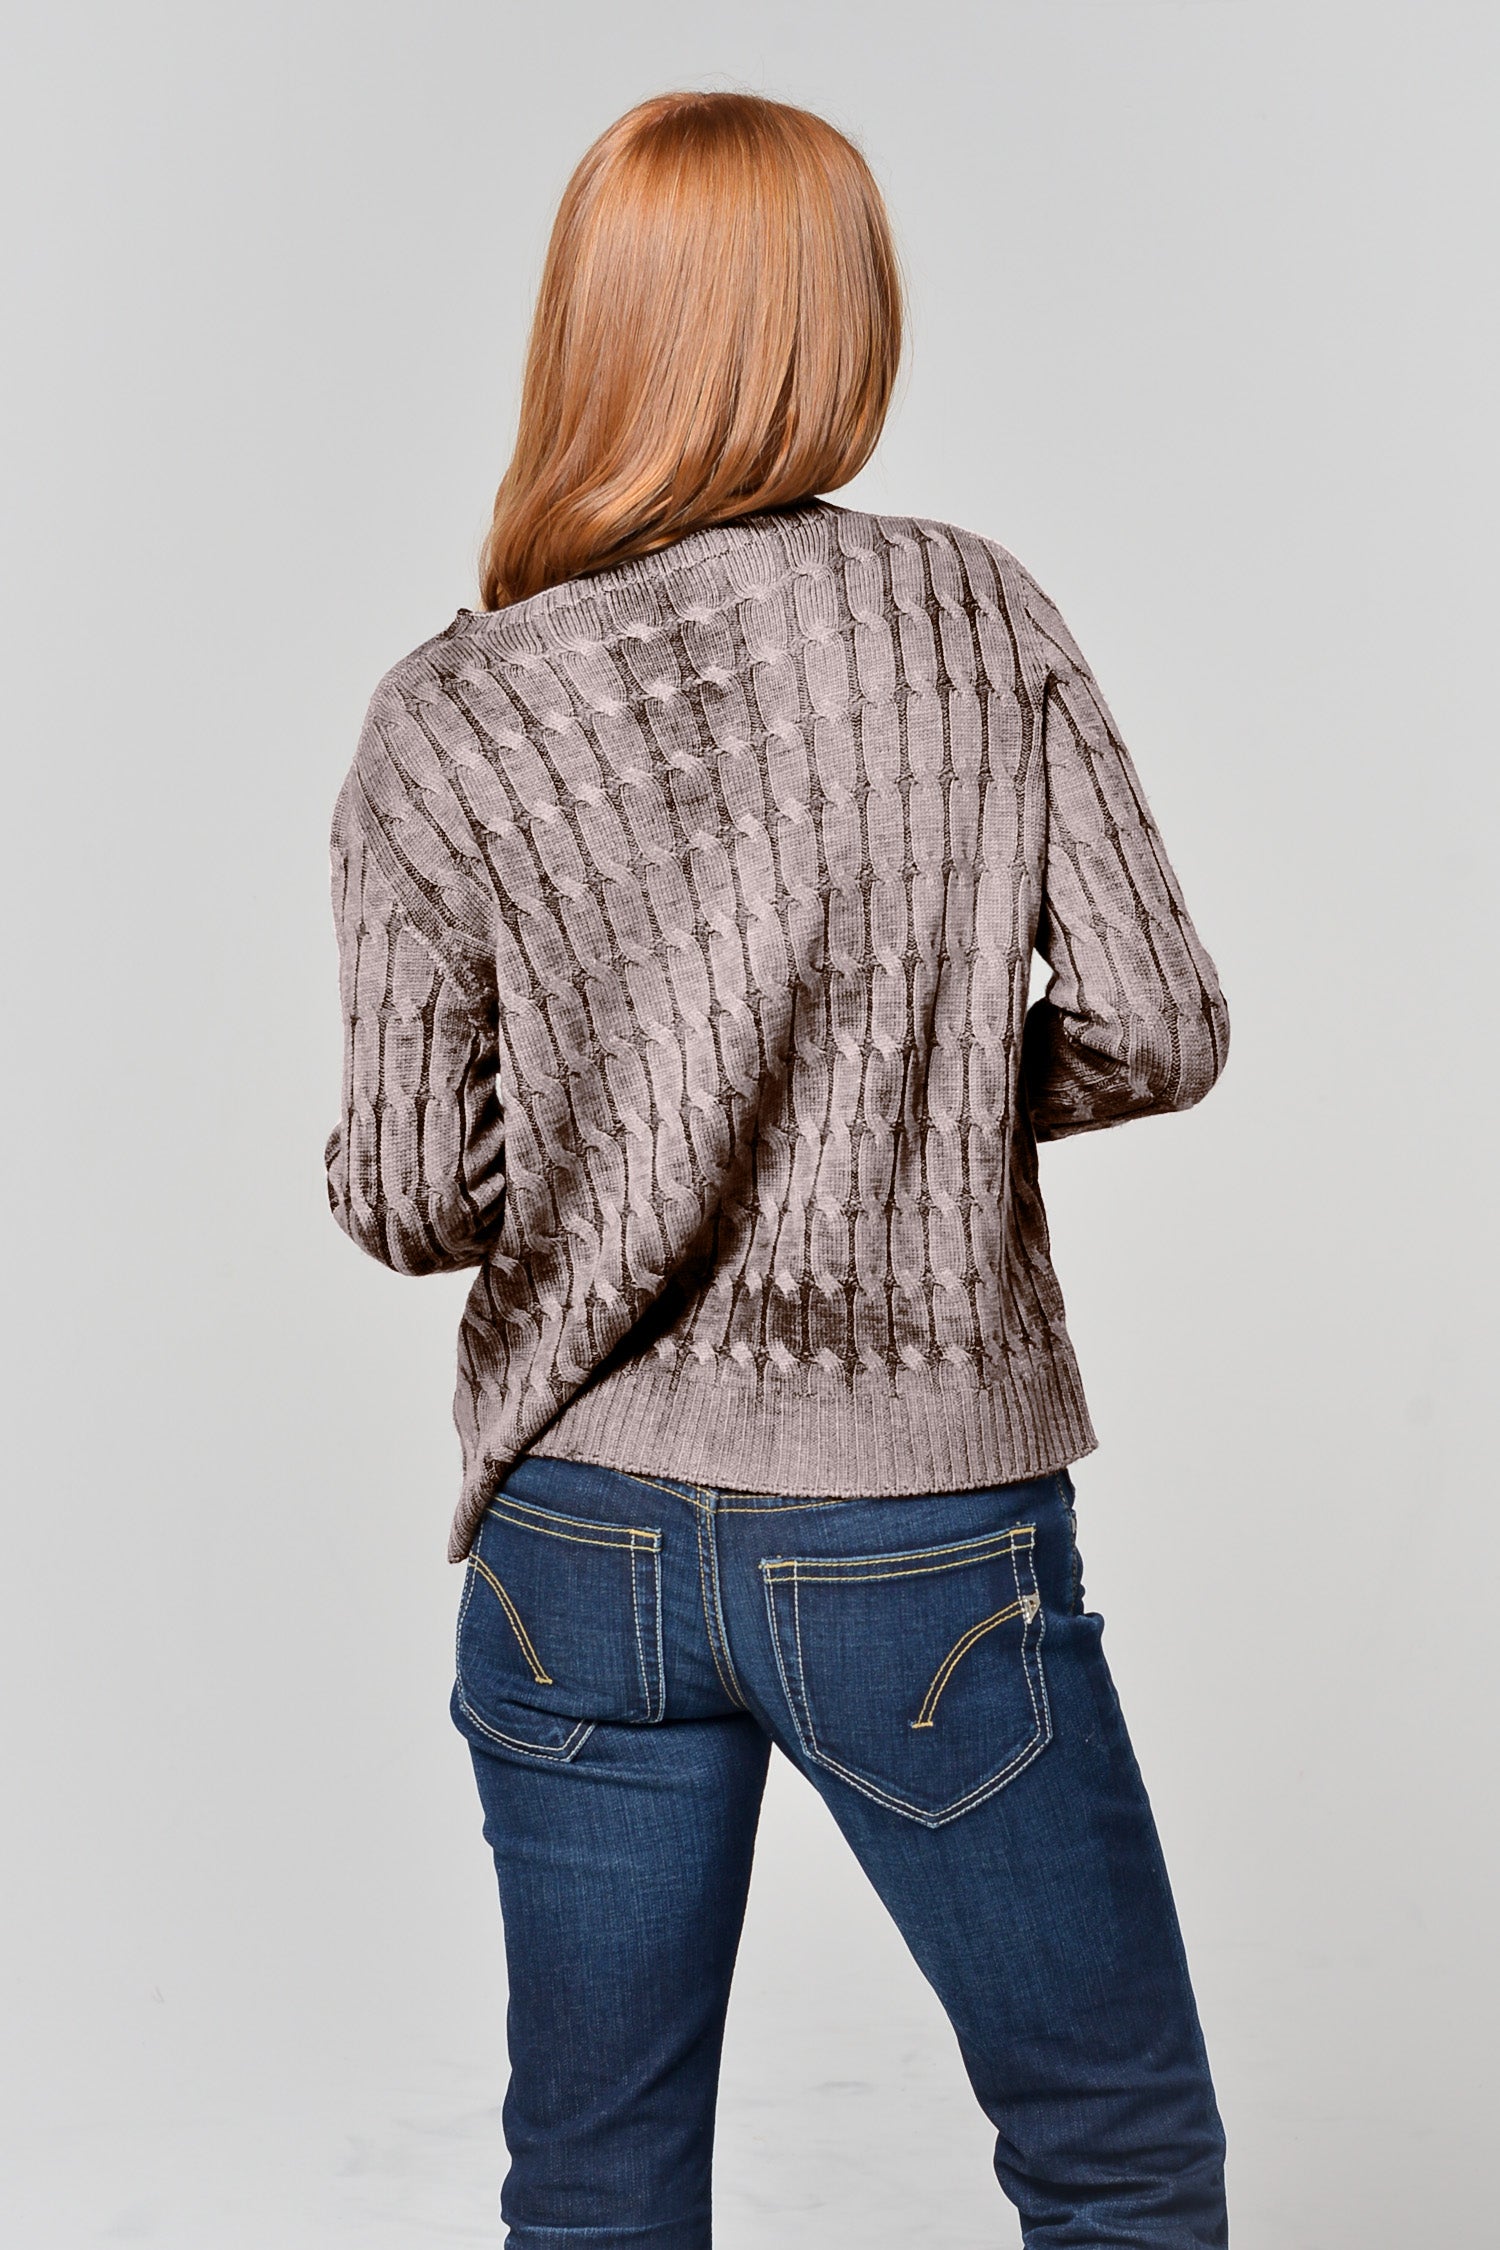 Dores Rock Art Sweater - Pumige